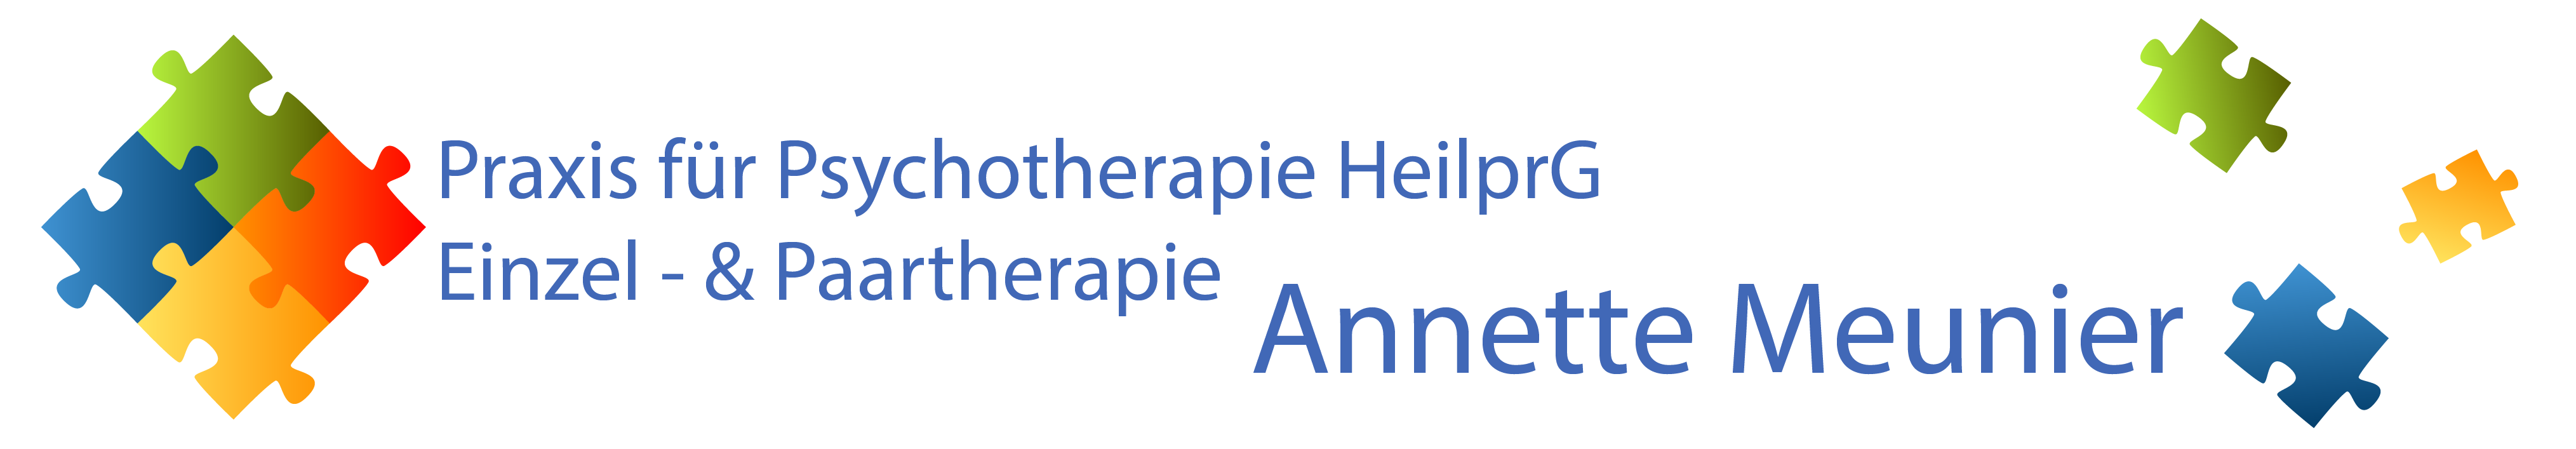 Annette Meunier – Praxis für Psychotherapie im Raum Bamberg Logo